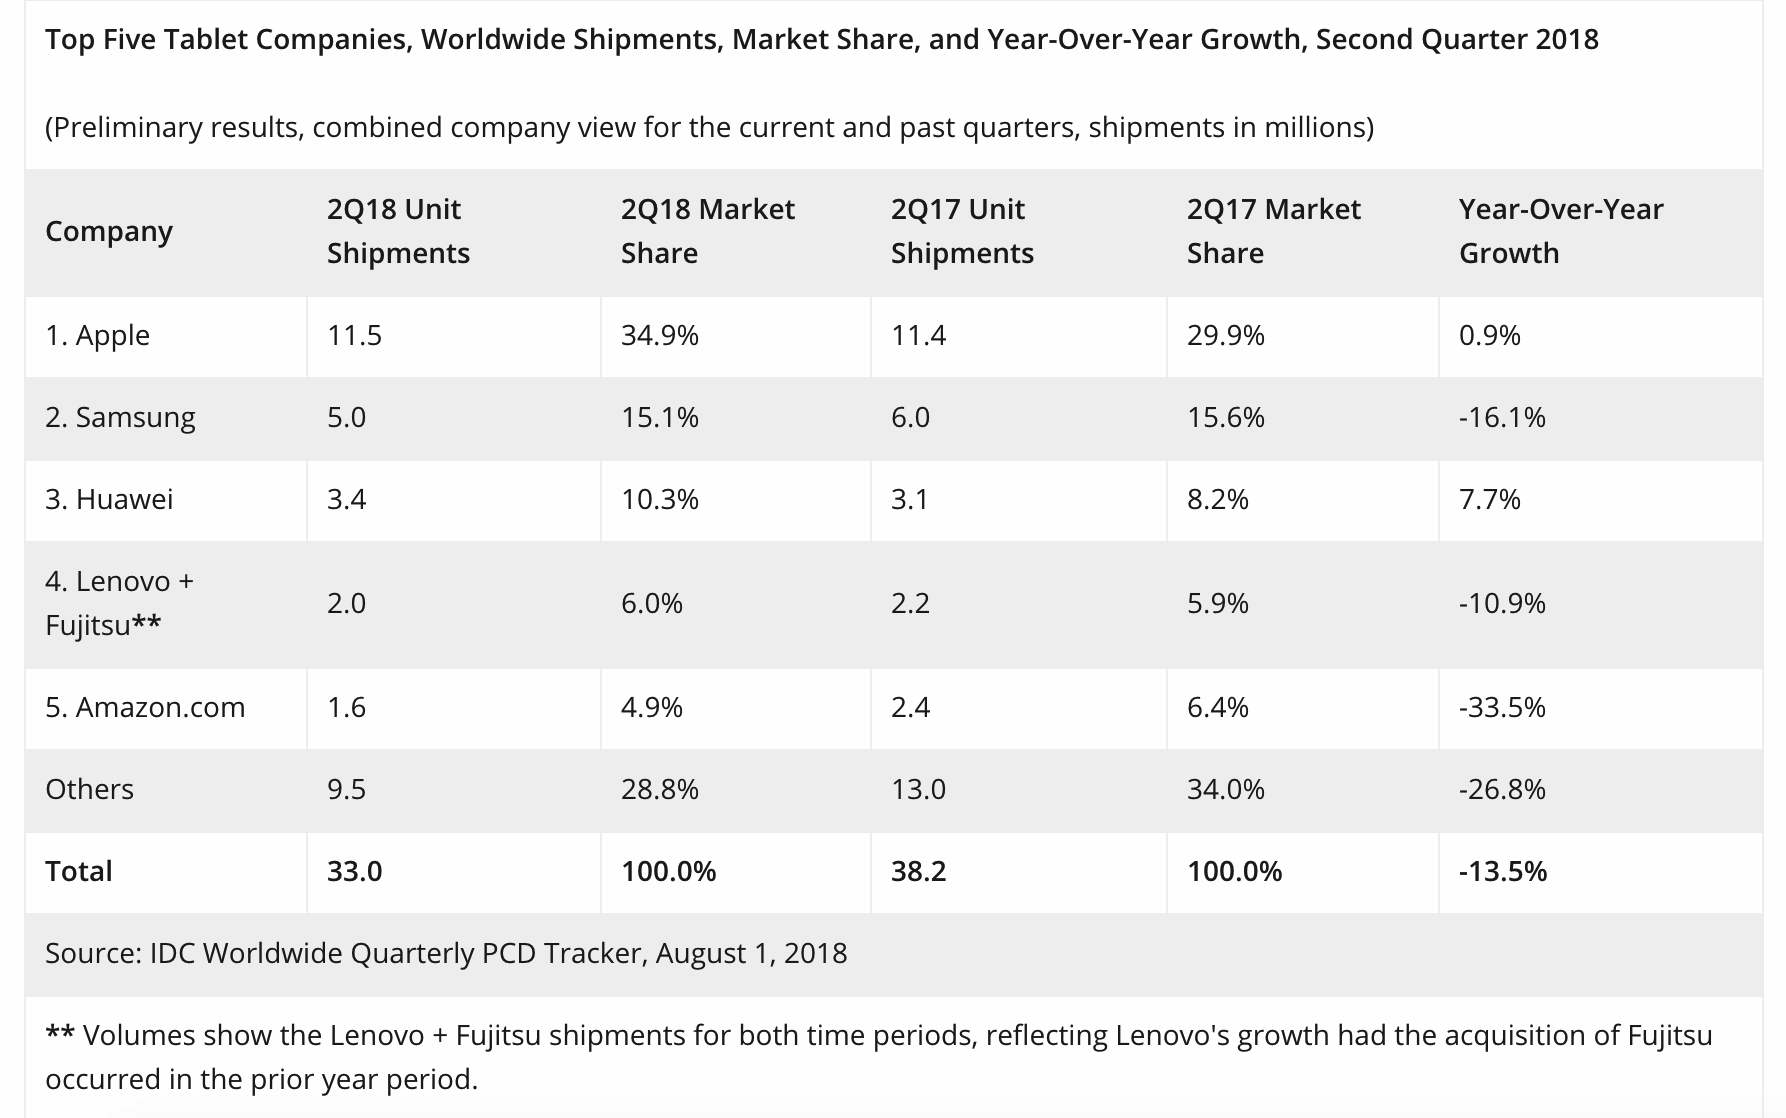 造梦西游手机版下载，IDC：2018 年 Q2 全球智能机出货量为 3.42 亿部 同比下降 1.8%